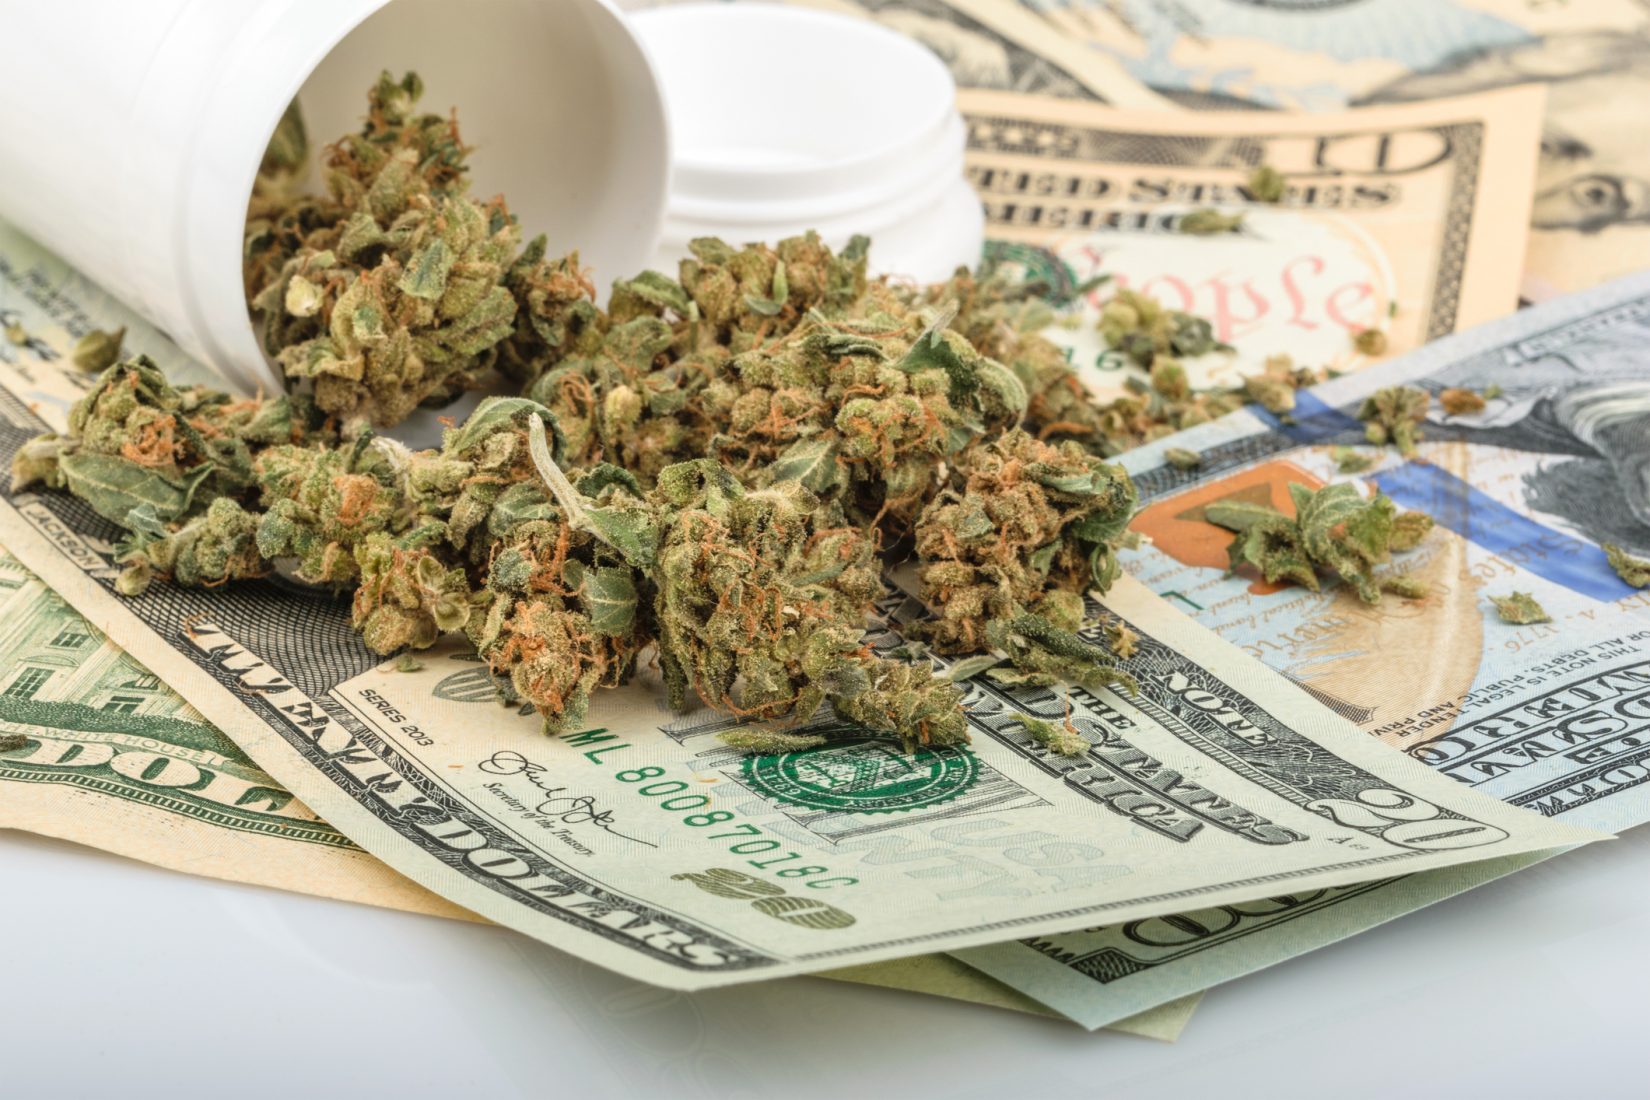 Marijuana cash sales